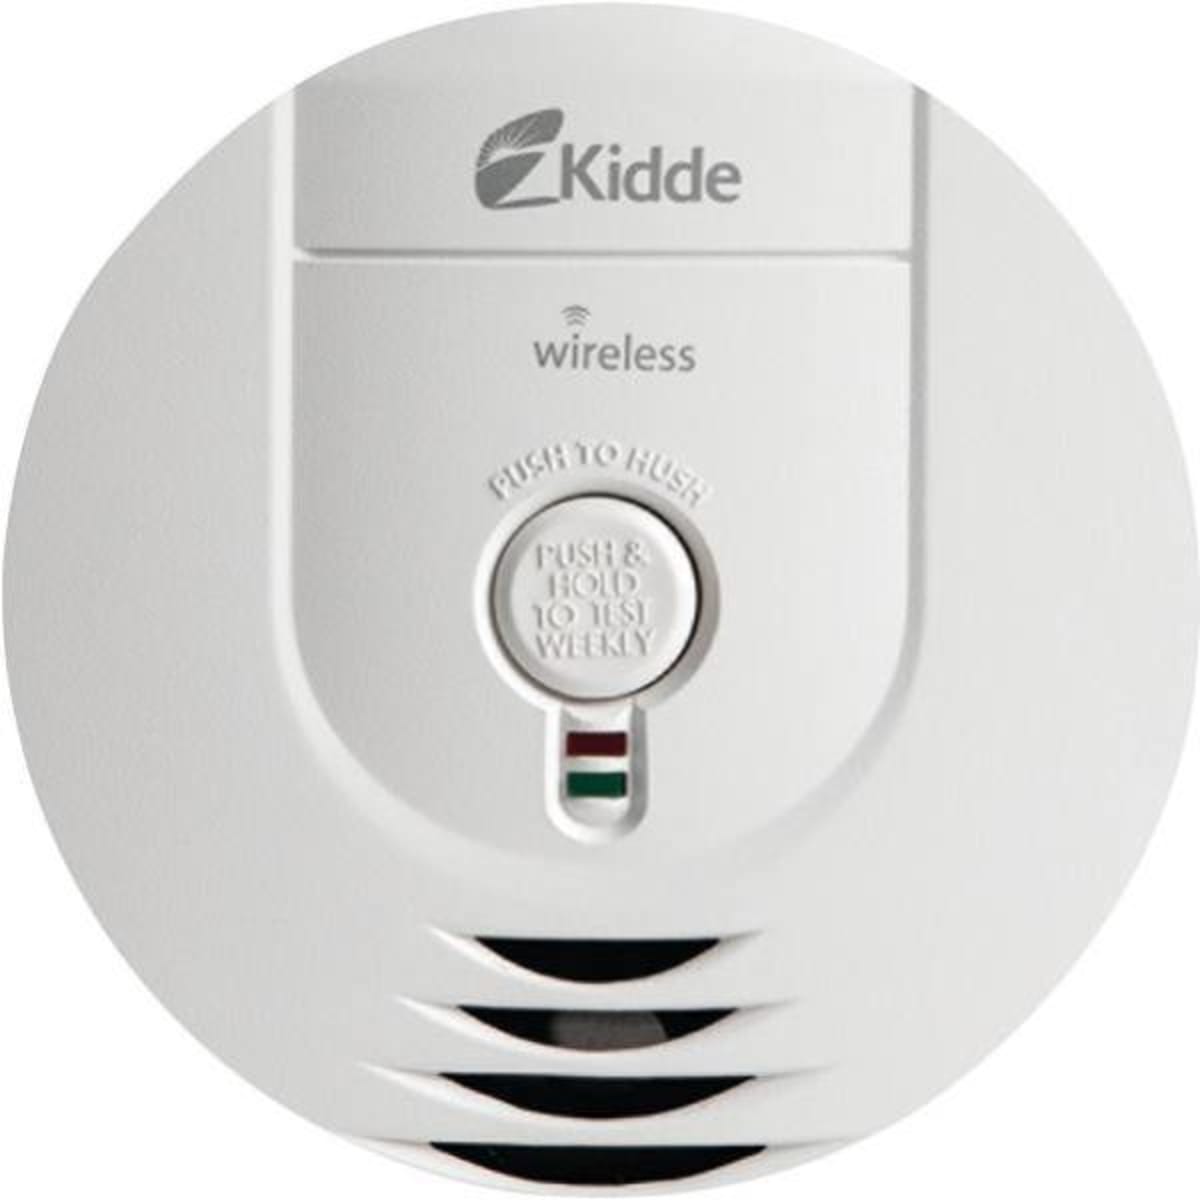 Kidde Dual Sensor Smoke Alarm, 85 Decibels, KIDDE